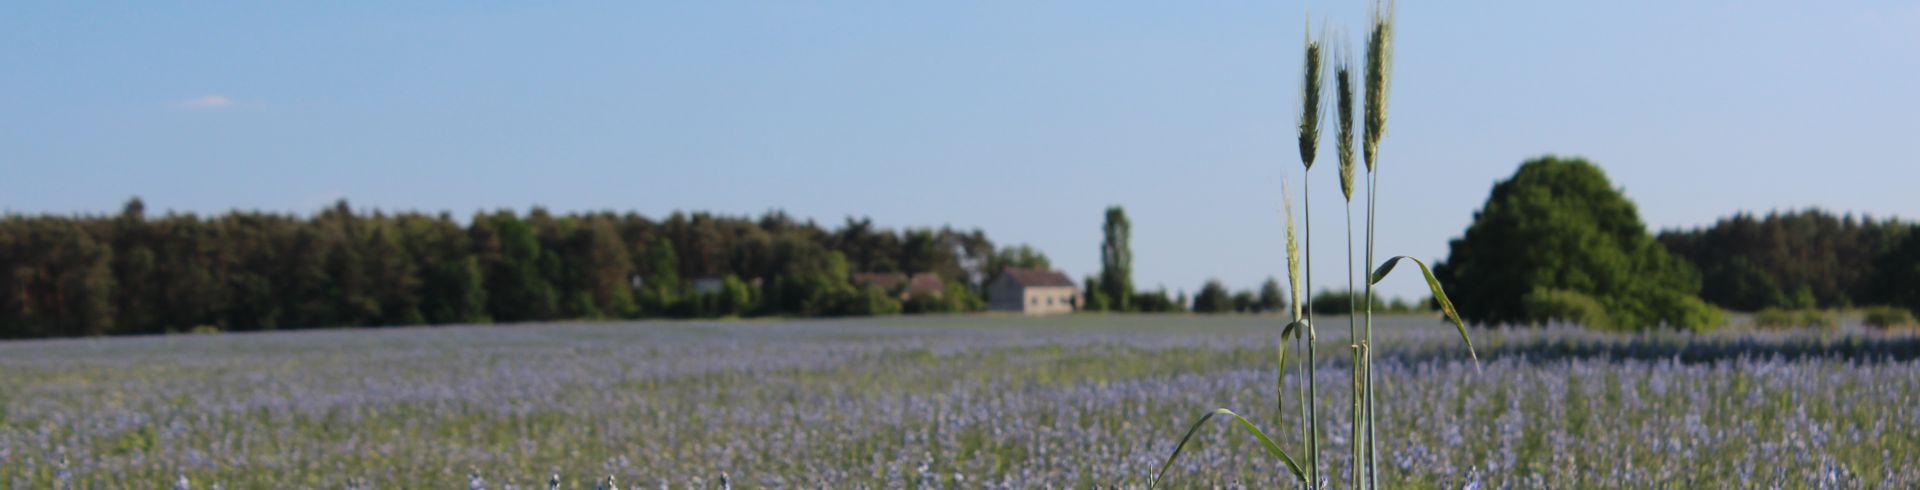 blaublühende Pflanzen auf Feld, drei Getreidehalme im Vordergrund